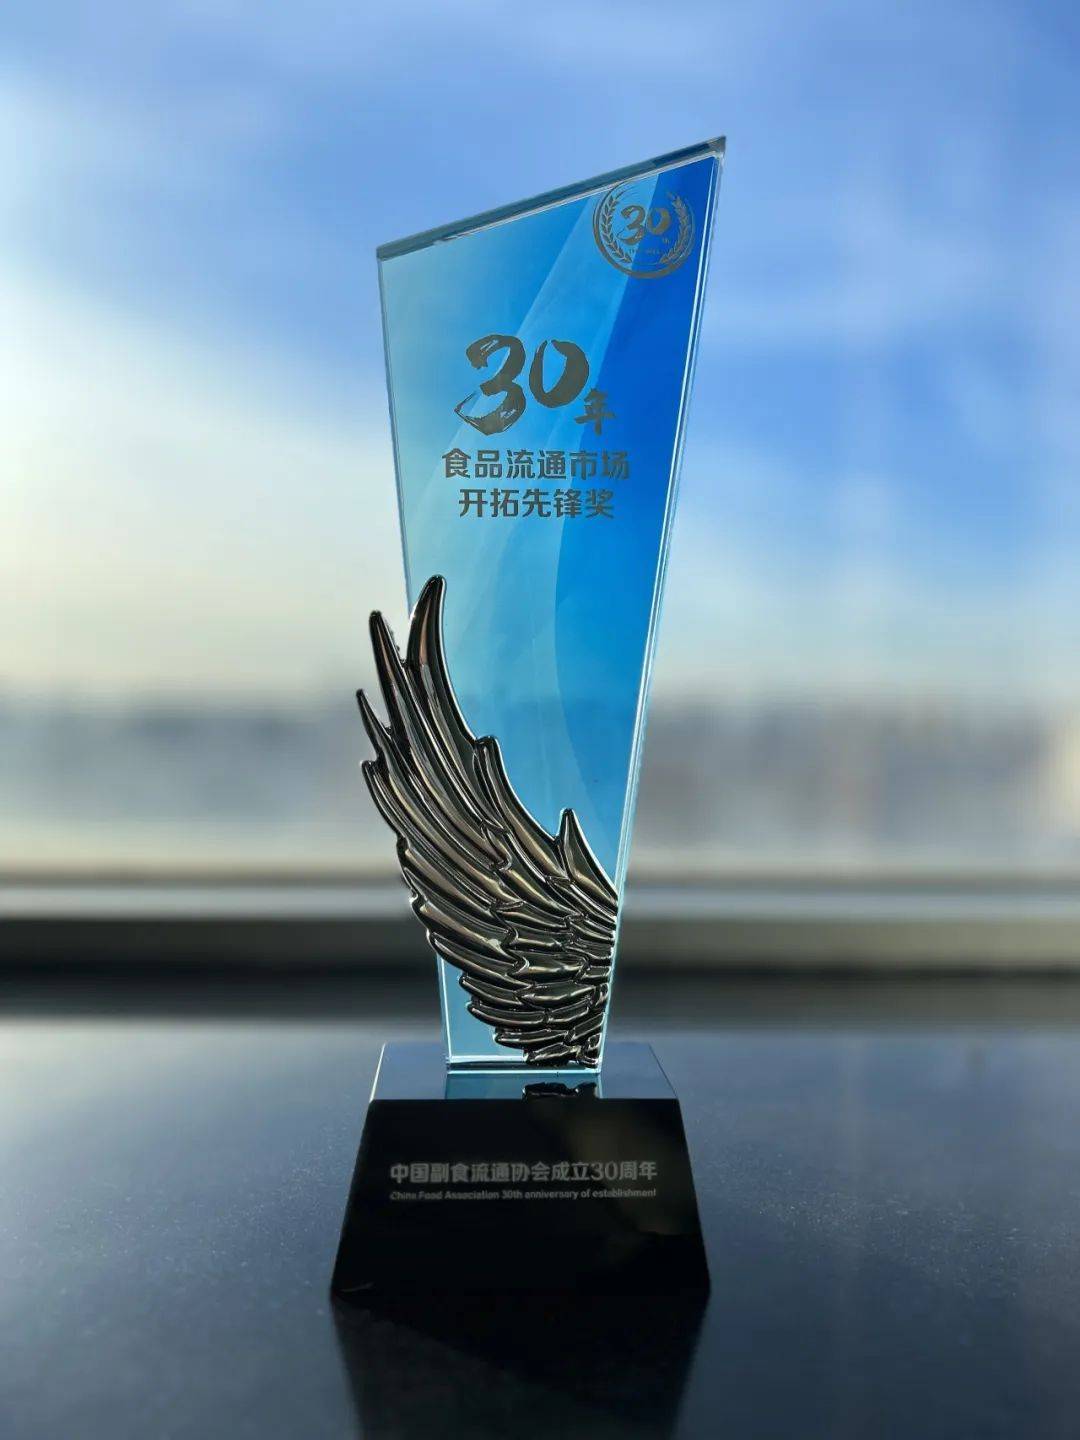 爱创科技出席“中国副食流通协会成立三十周年庆典”，荣获两个奖项！ 